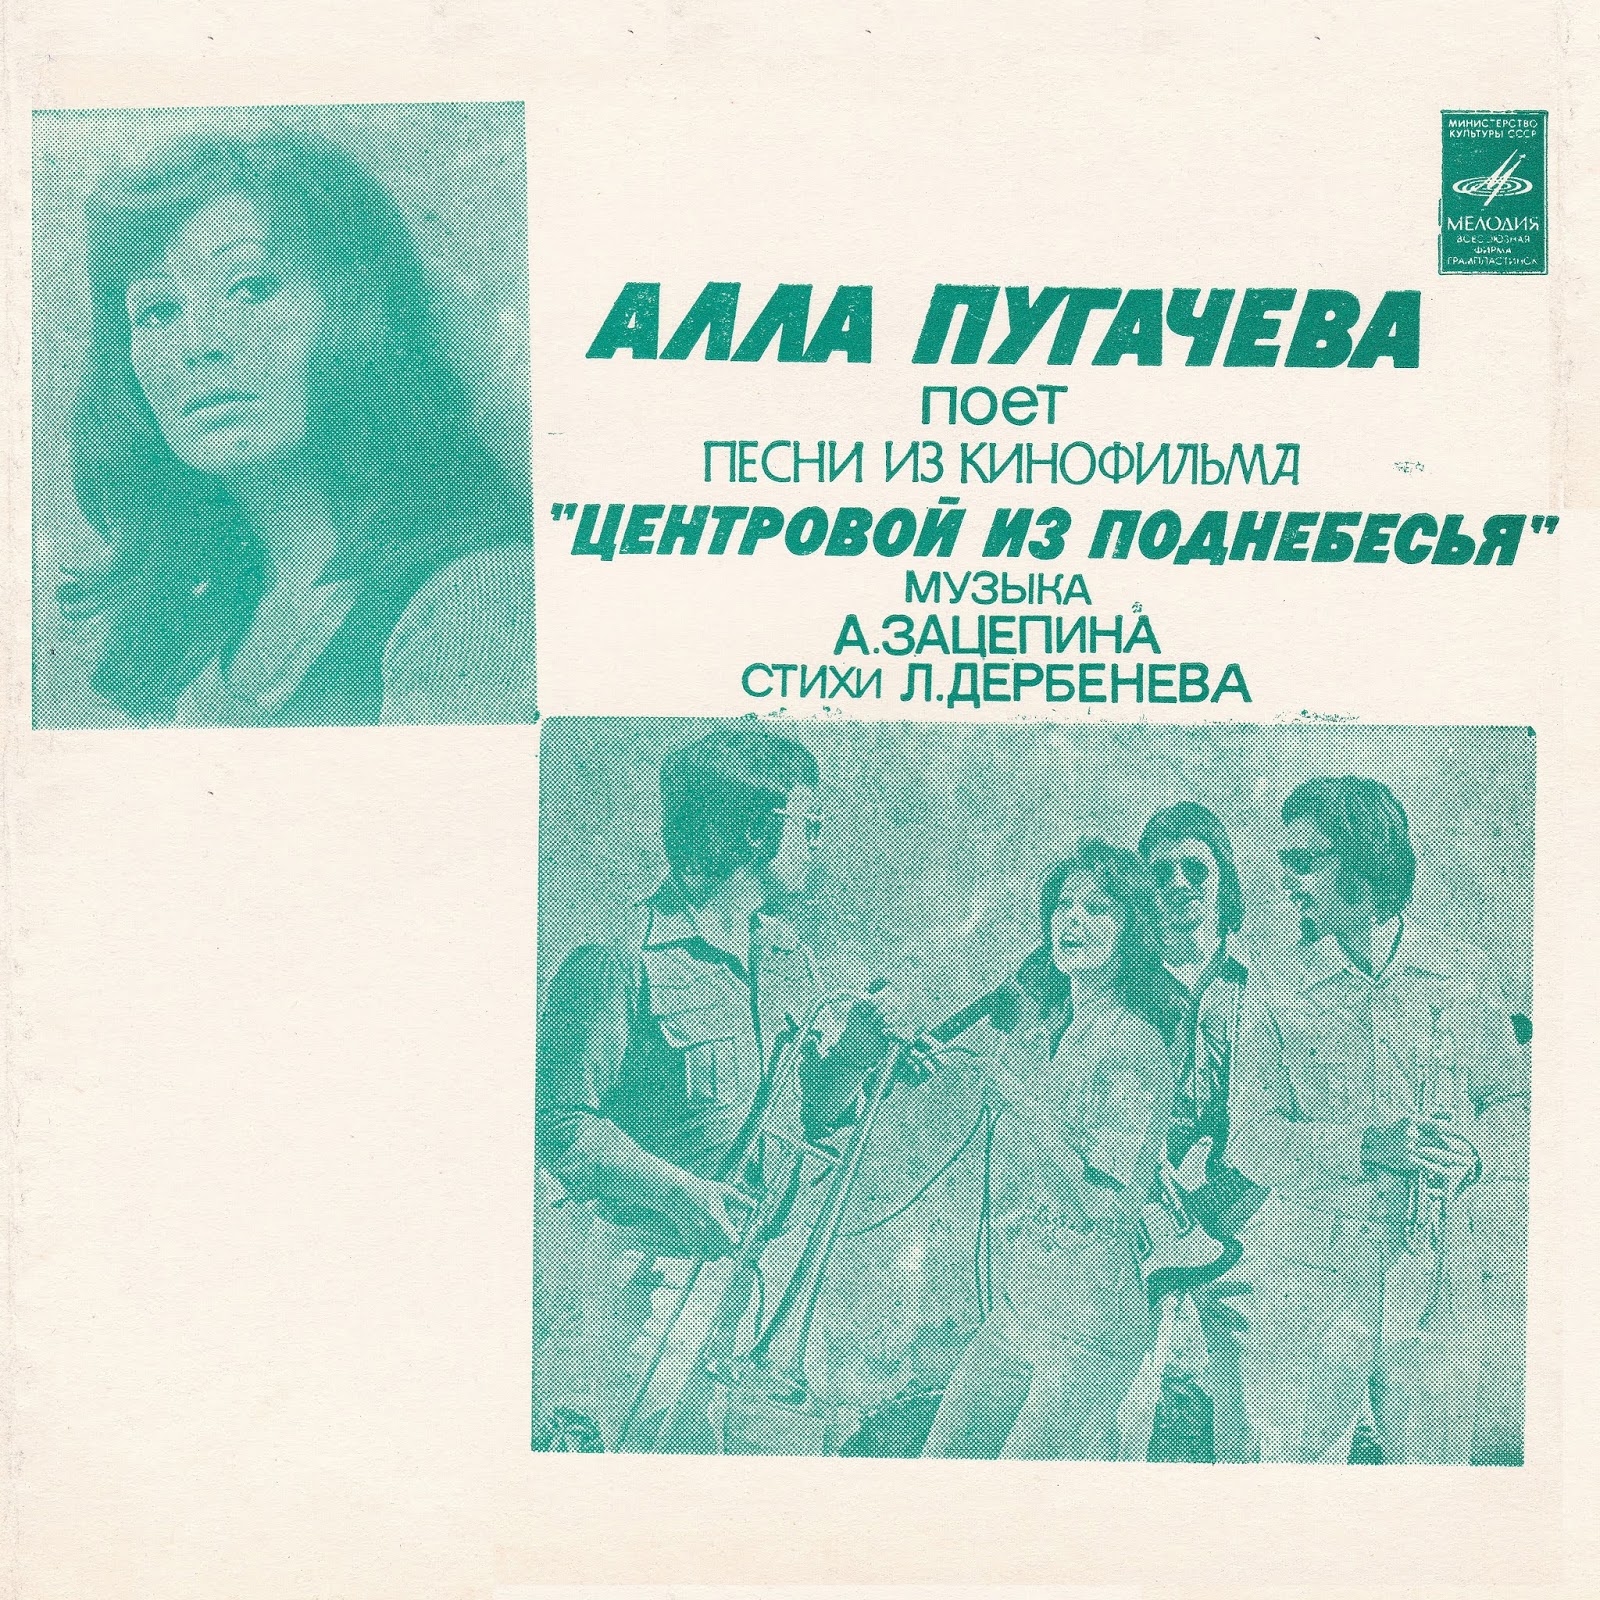 Музыка песни пугачева. Пугачева Сопот 1975.